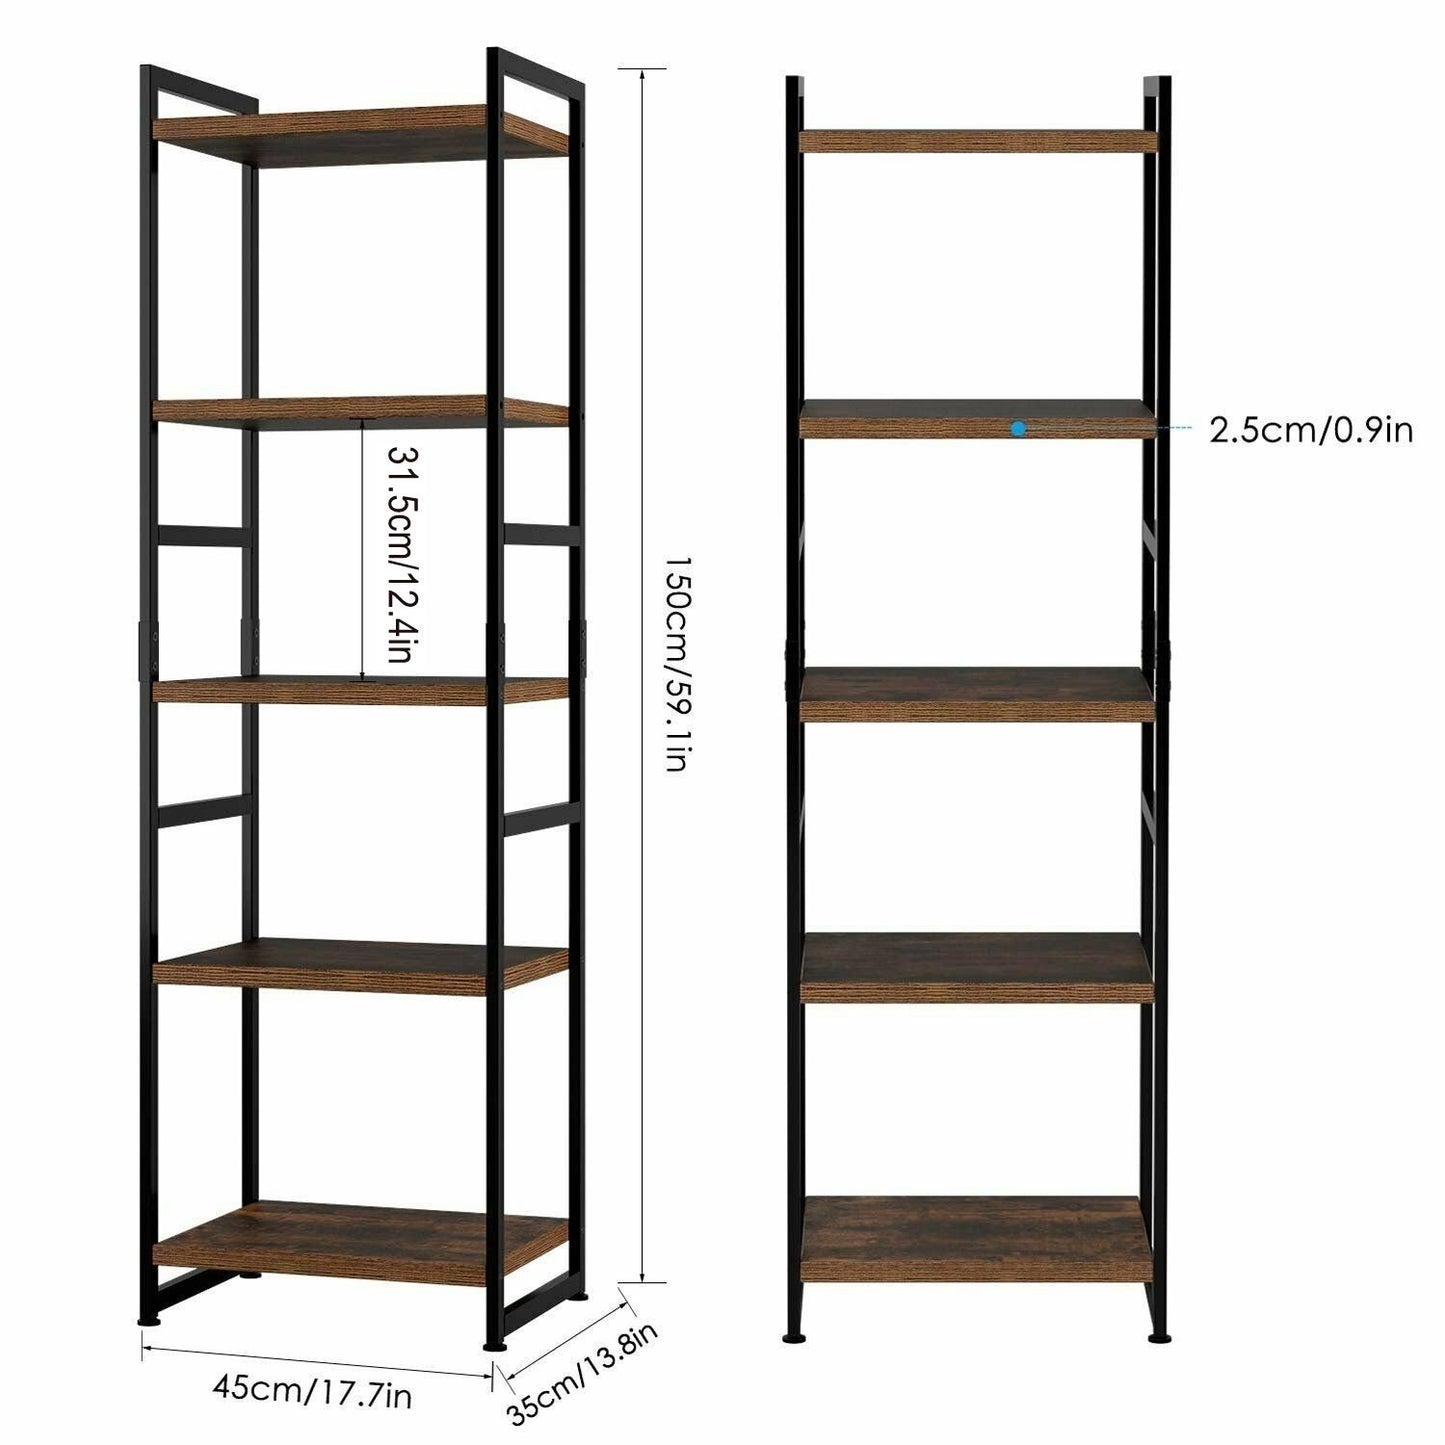 Grandiose 5-Tier Bookshelf with Metal Frame for Home